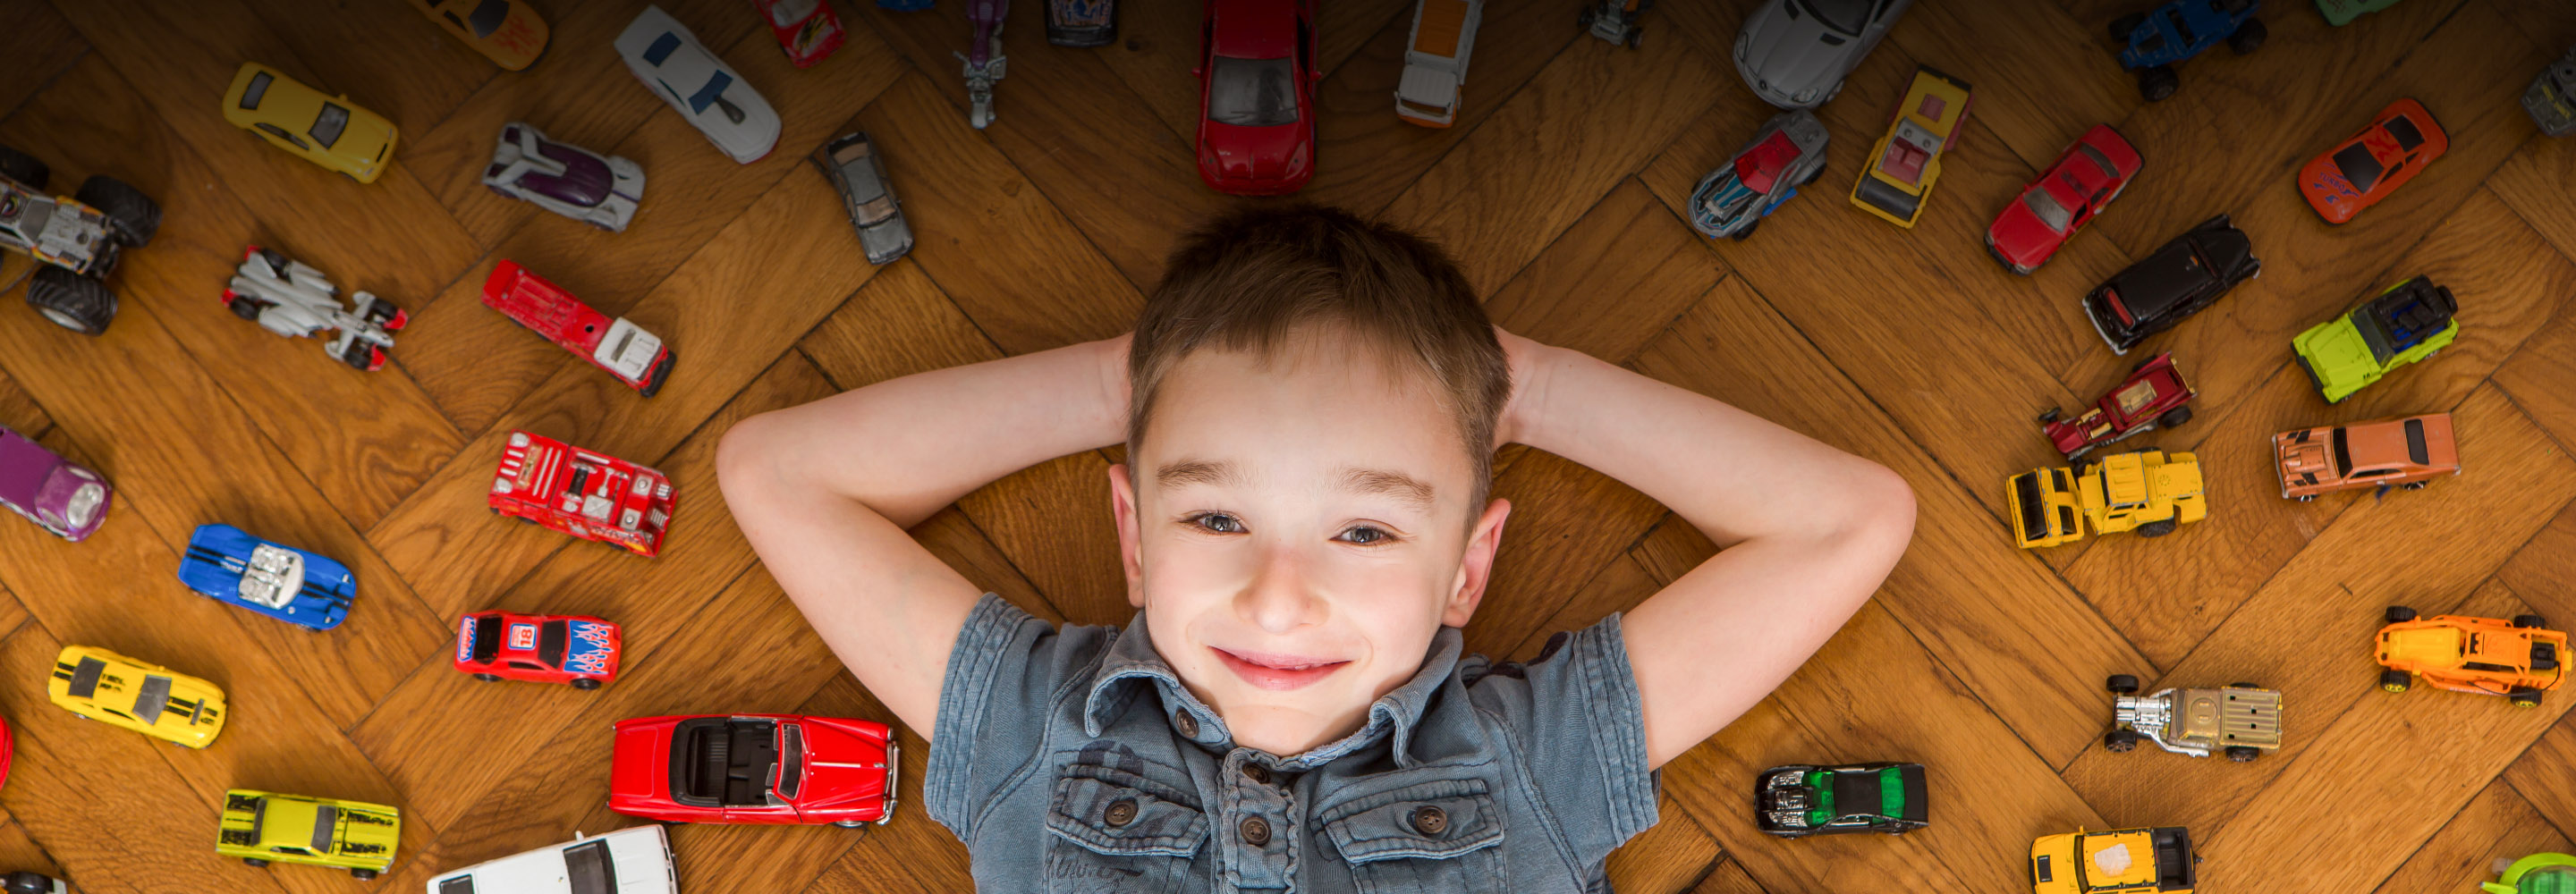 Как не превратить дом в склад игрушек: 8 советов для родителей